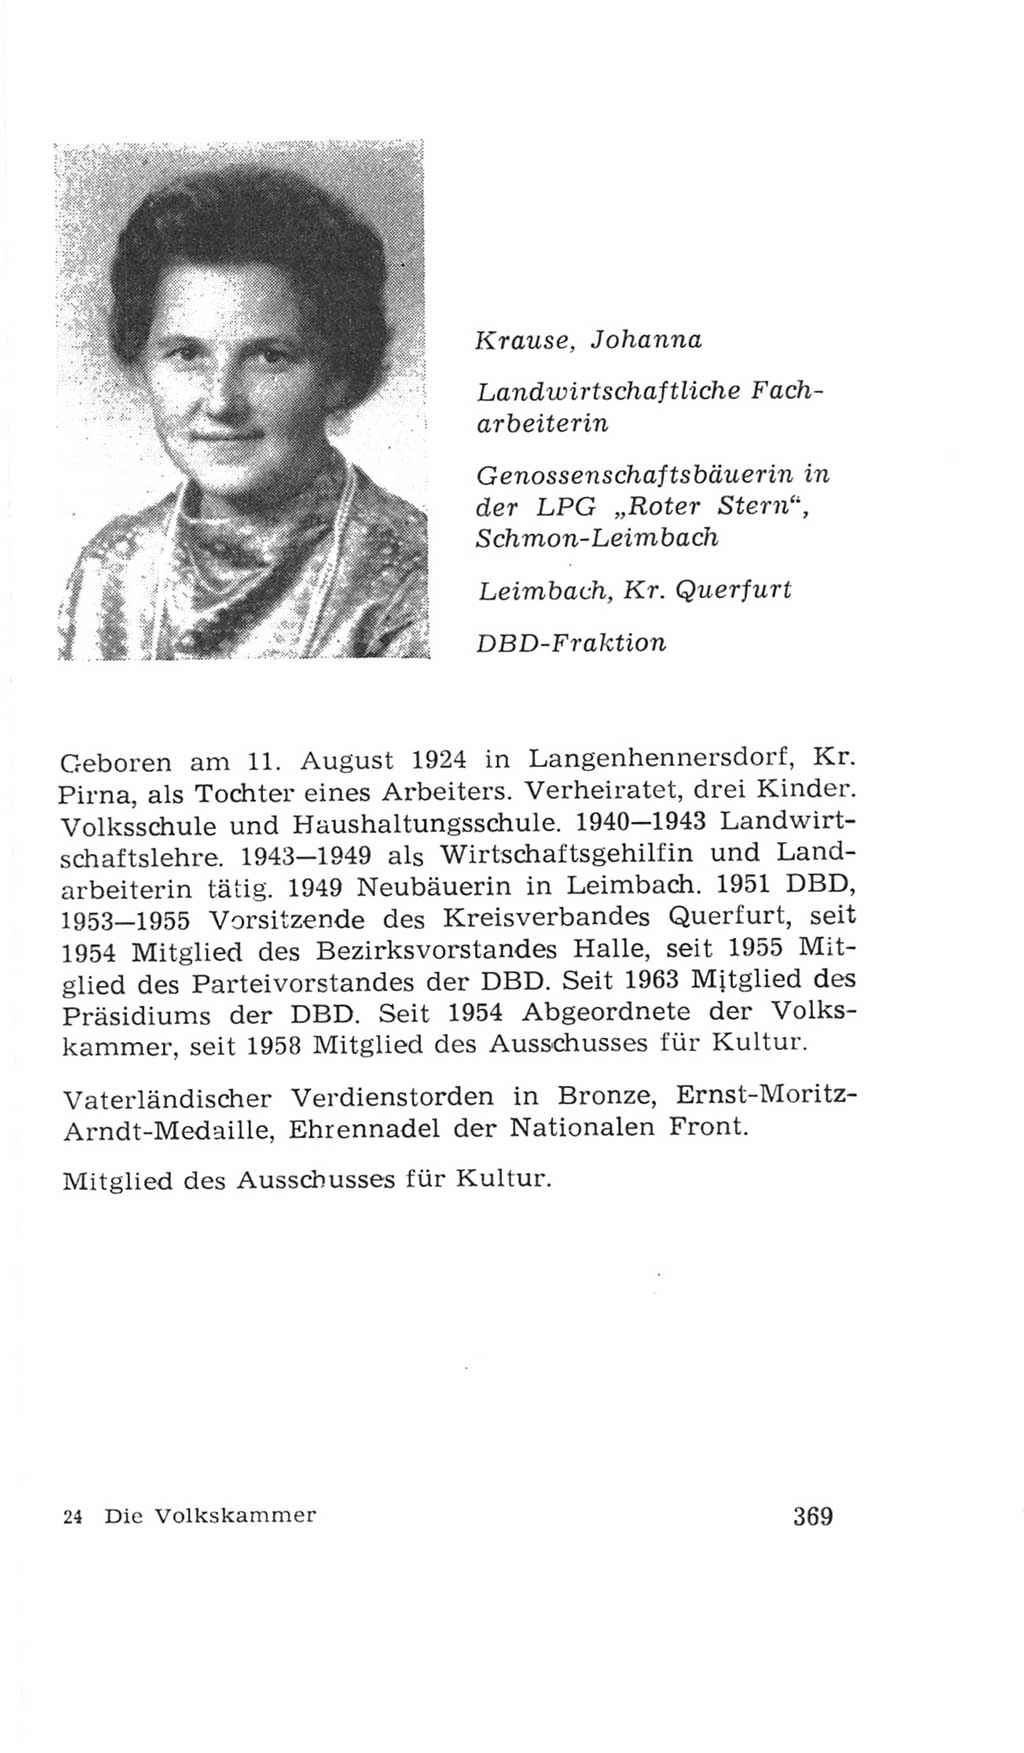 Volkskammer (VK) der Deutschen Demokratischen Republik (DDR), 4. Wahlperiode 1963-1967, Seite 369 (VK. DDR 4. WP. 1963-1967, S. 369)